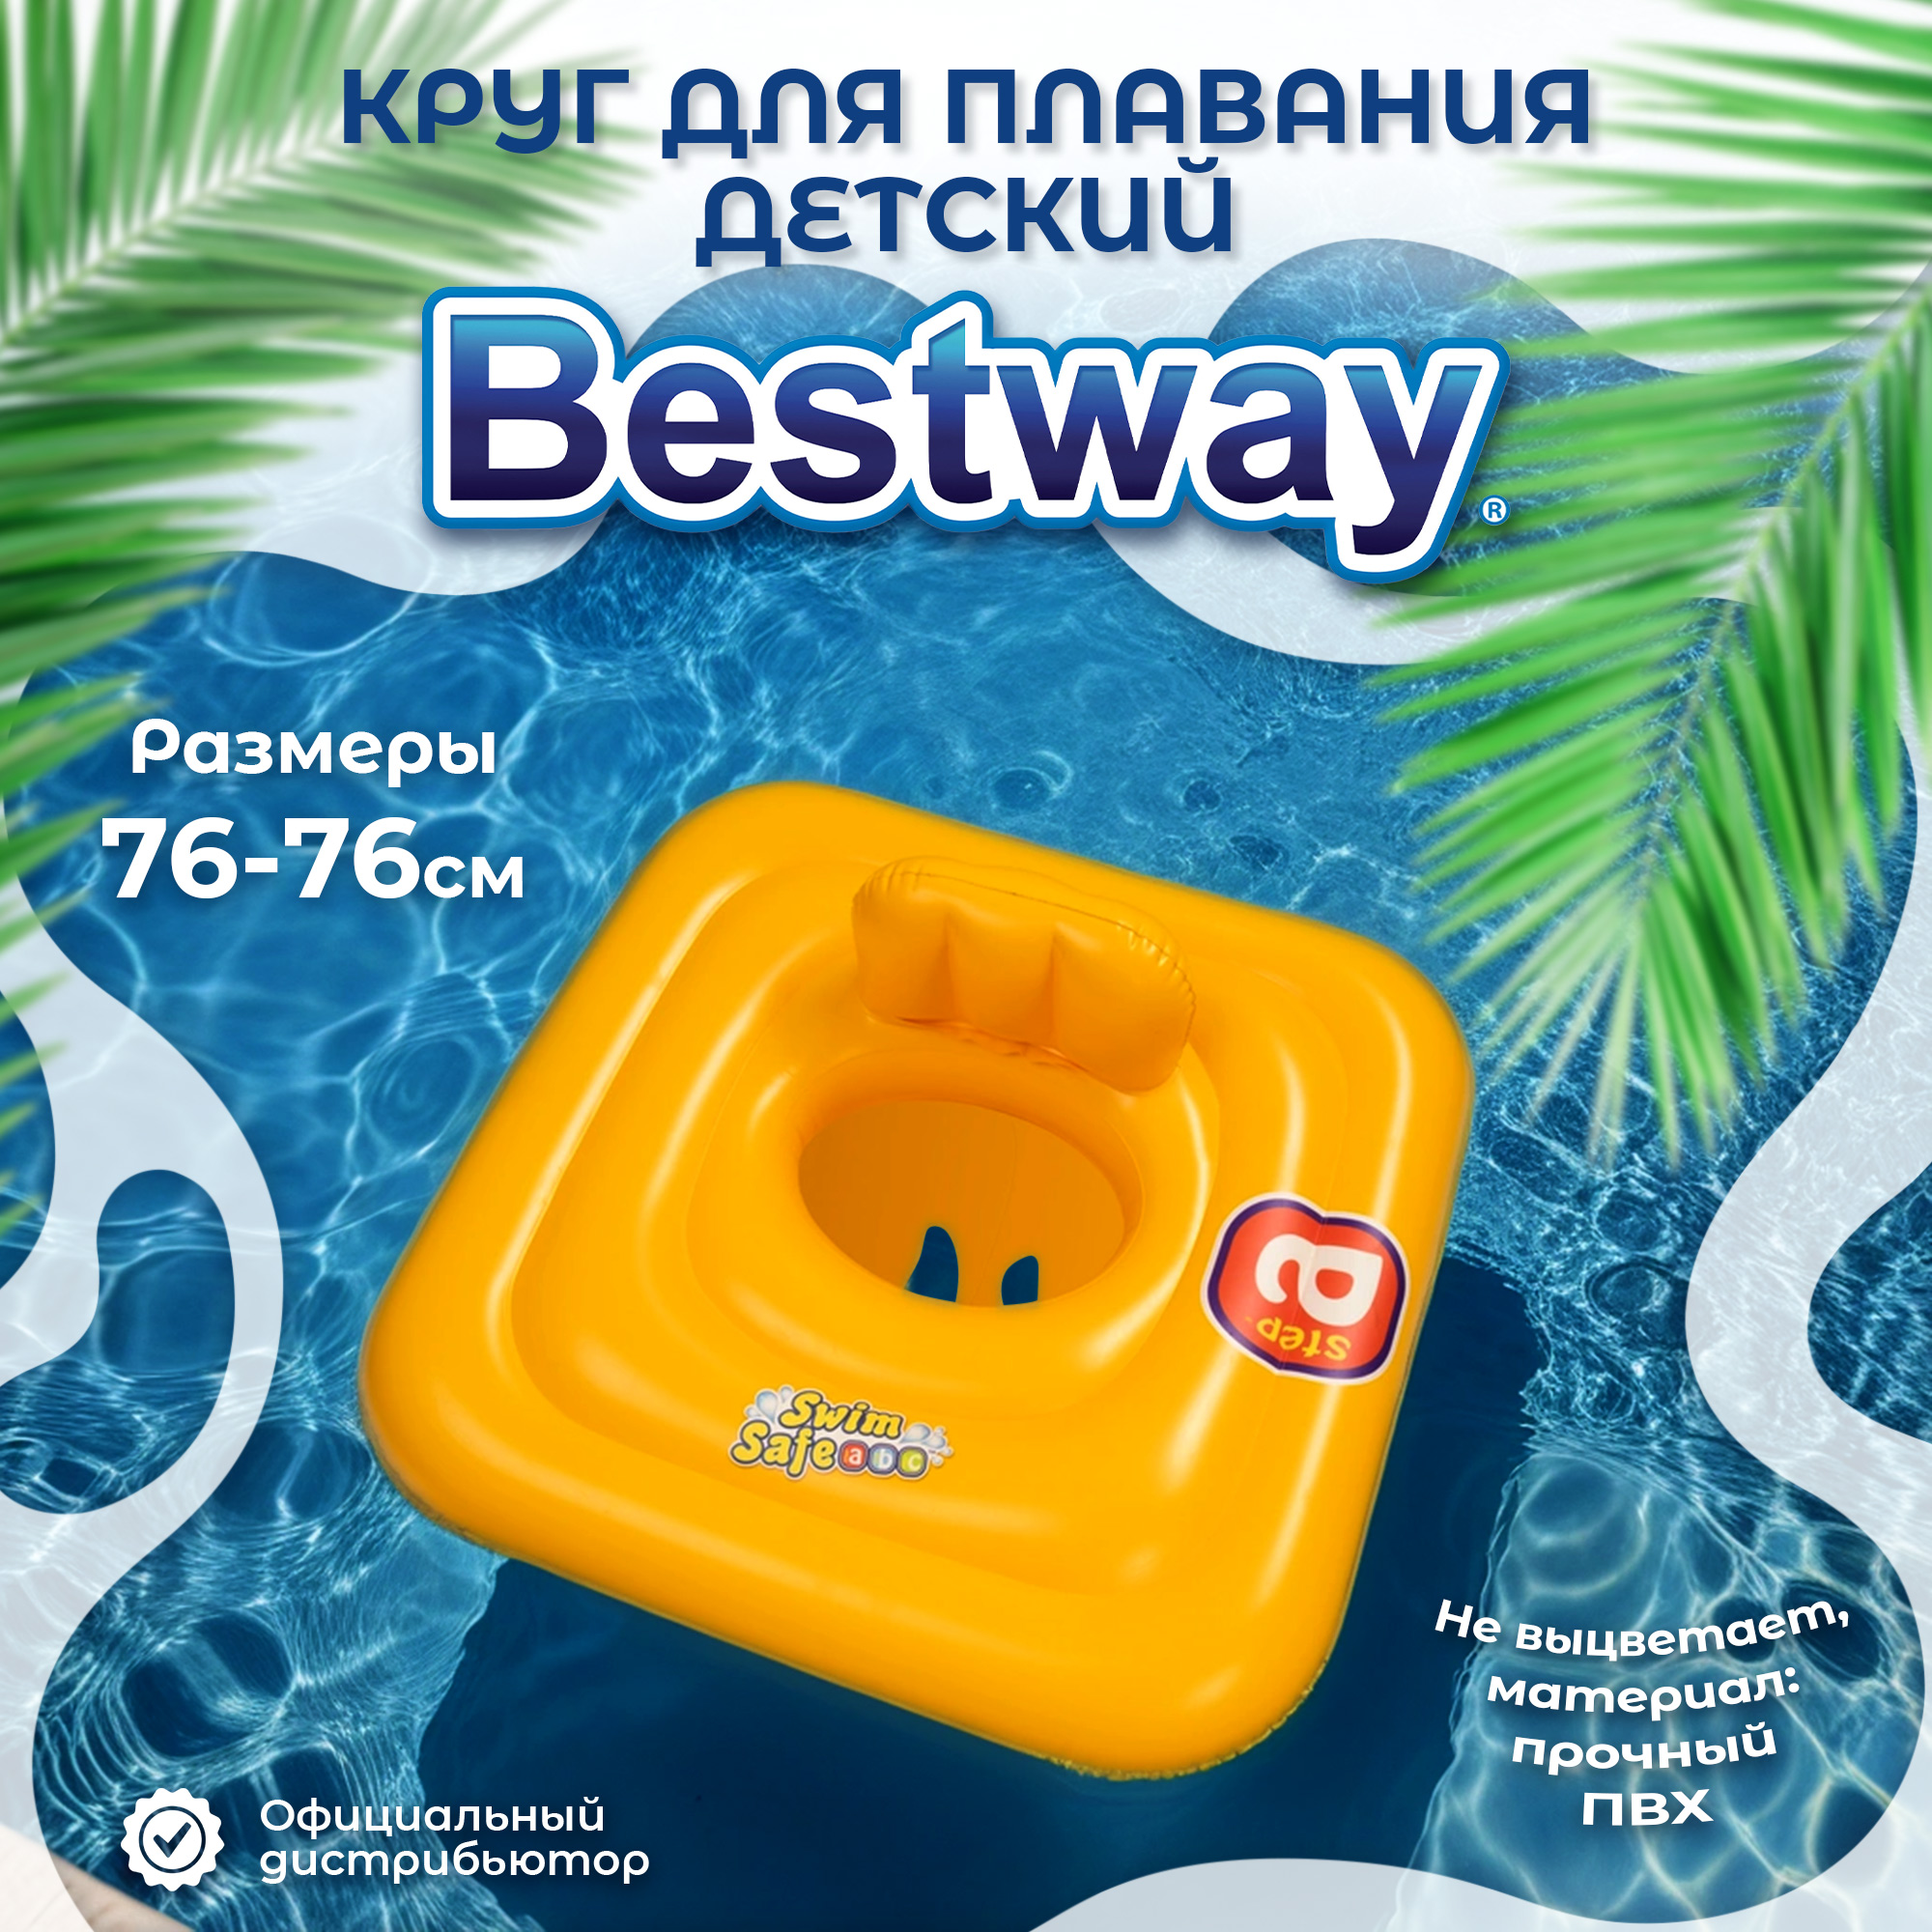 Круг для плавания Best way надувной детский с сиденьем и спинкой 76х76 см (32050) - фото 2